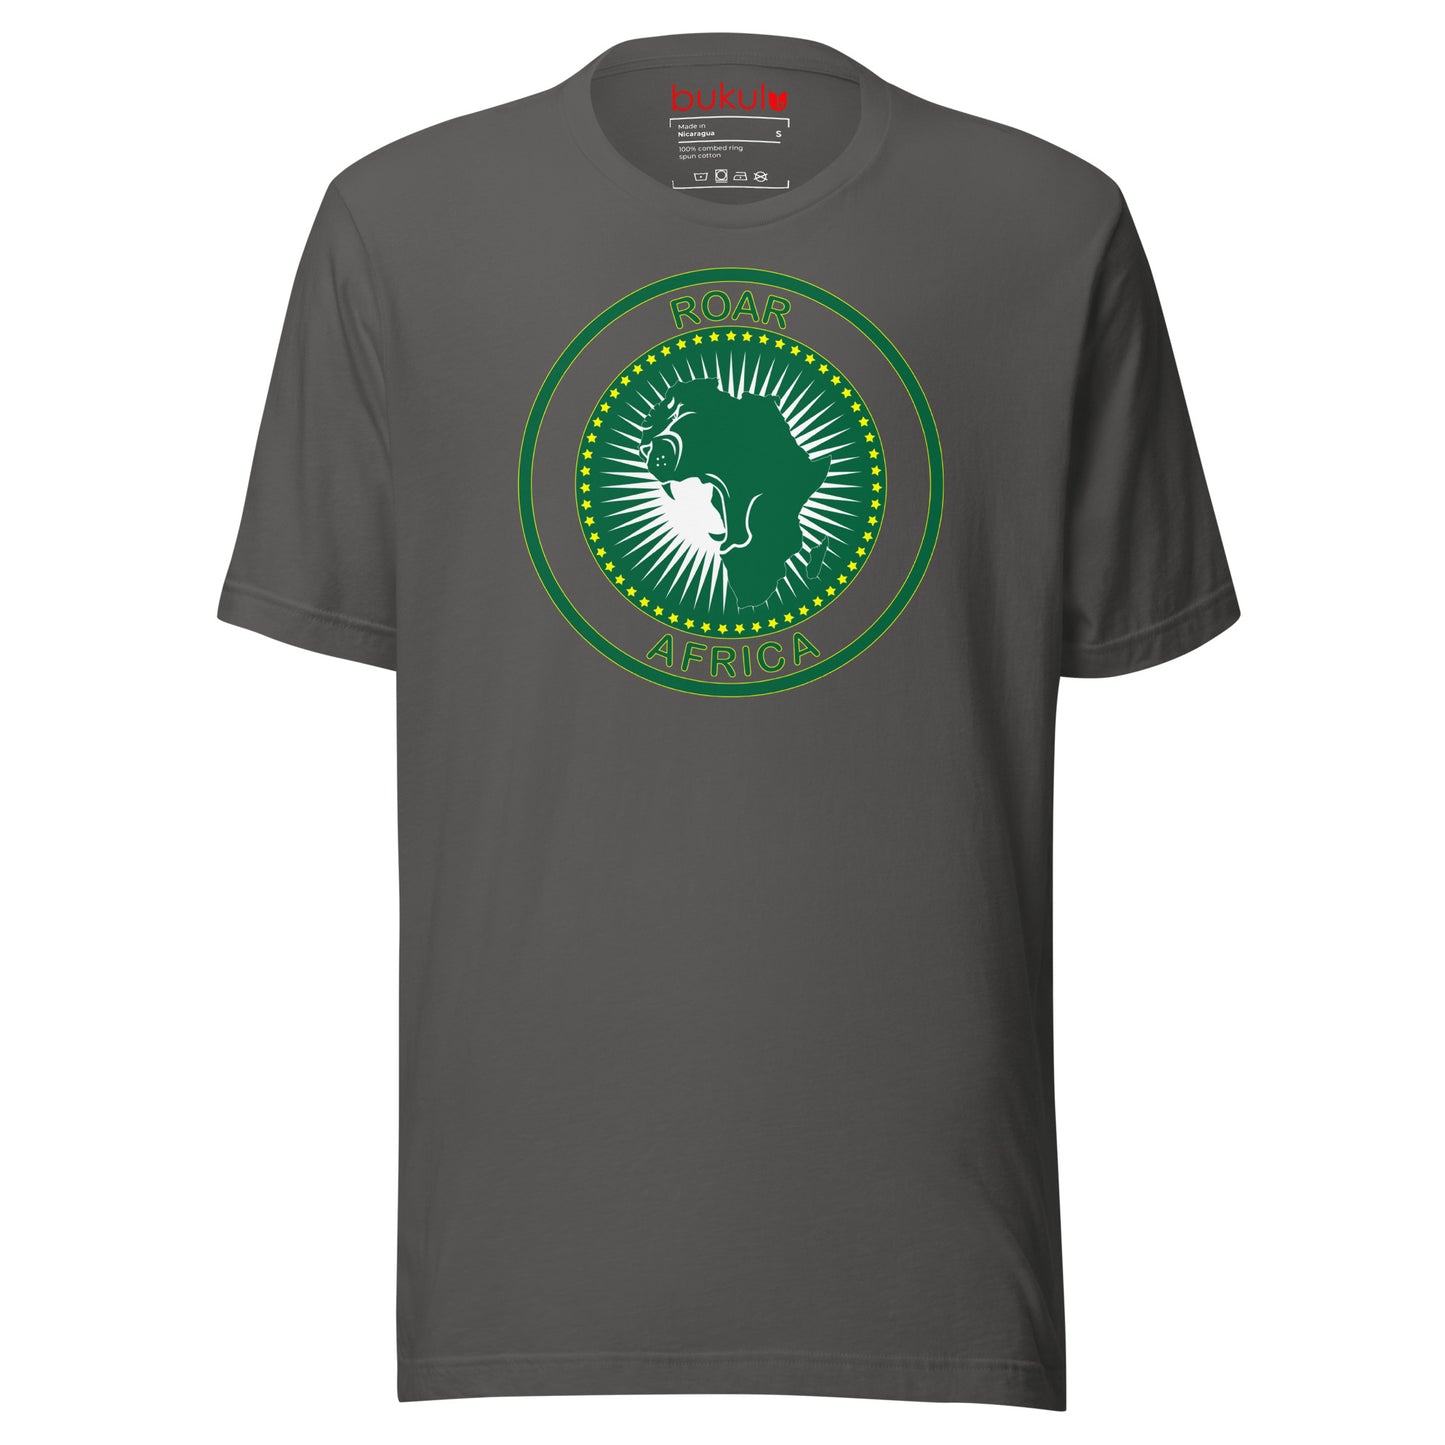 Roar Africa T-Shirt in AU Flag African Shirt, Black History Shirt Roar Lion African Map Tee, Blm Freedom Shirt, Shirt For Activist | Unisex - bukulu